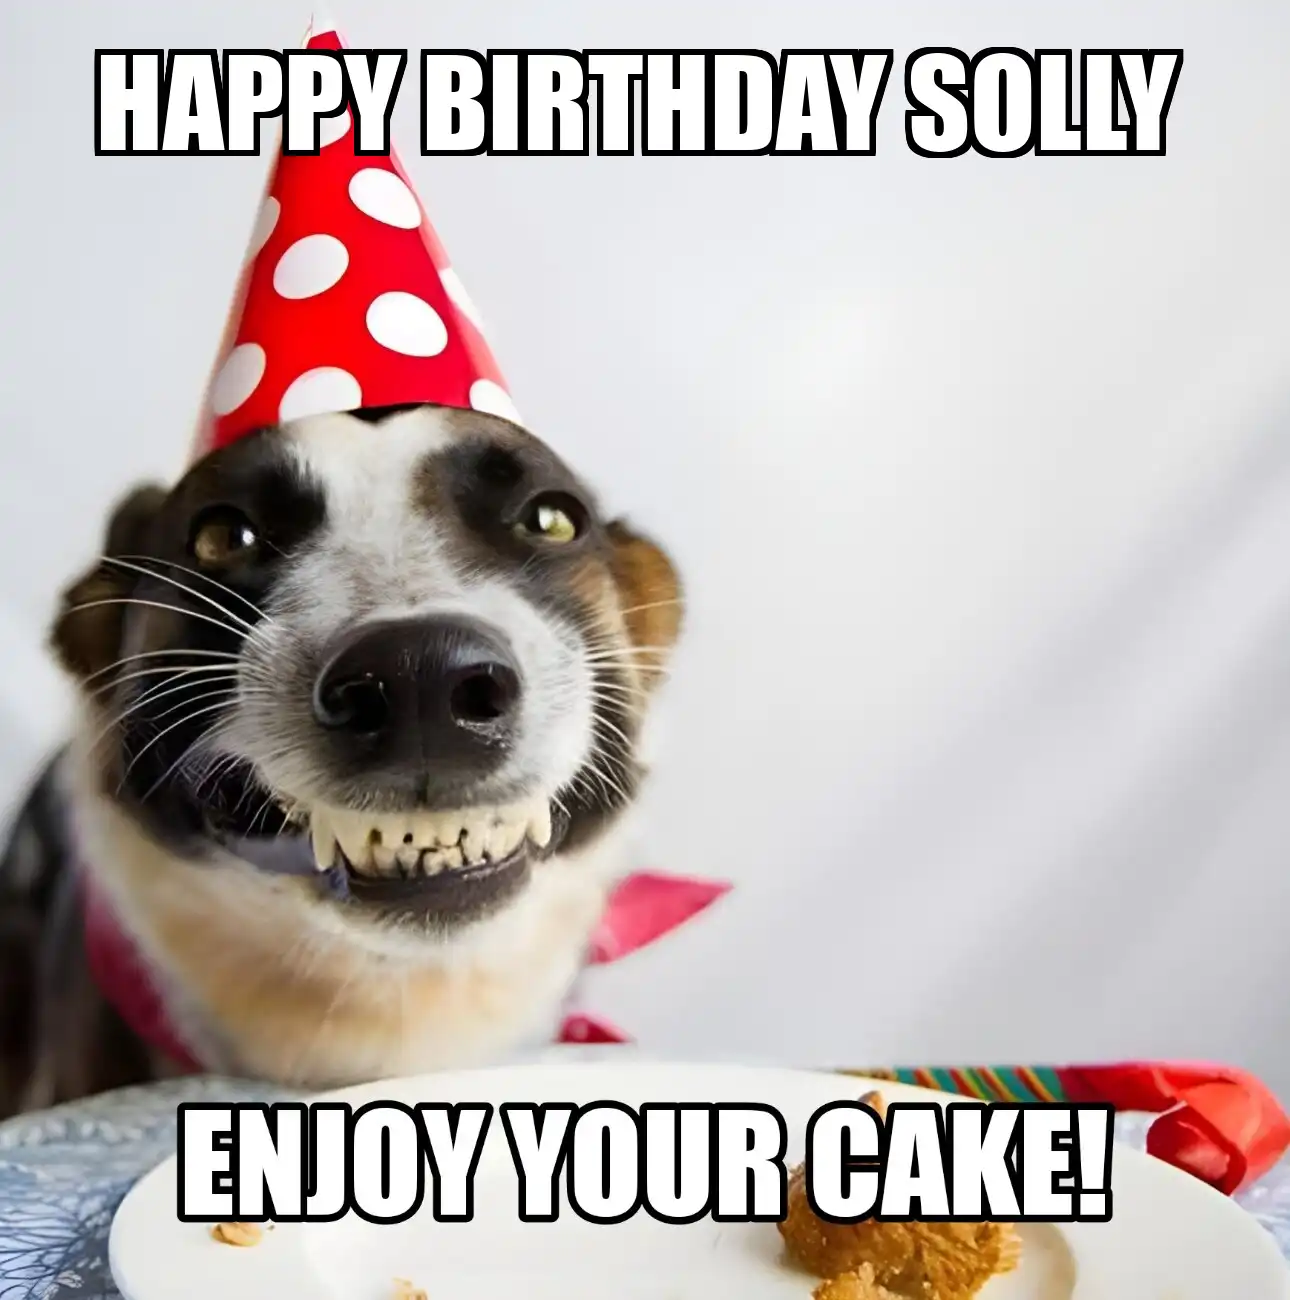 Happy Birthday Solly Enjoy Your Cake Dog Meme